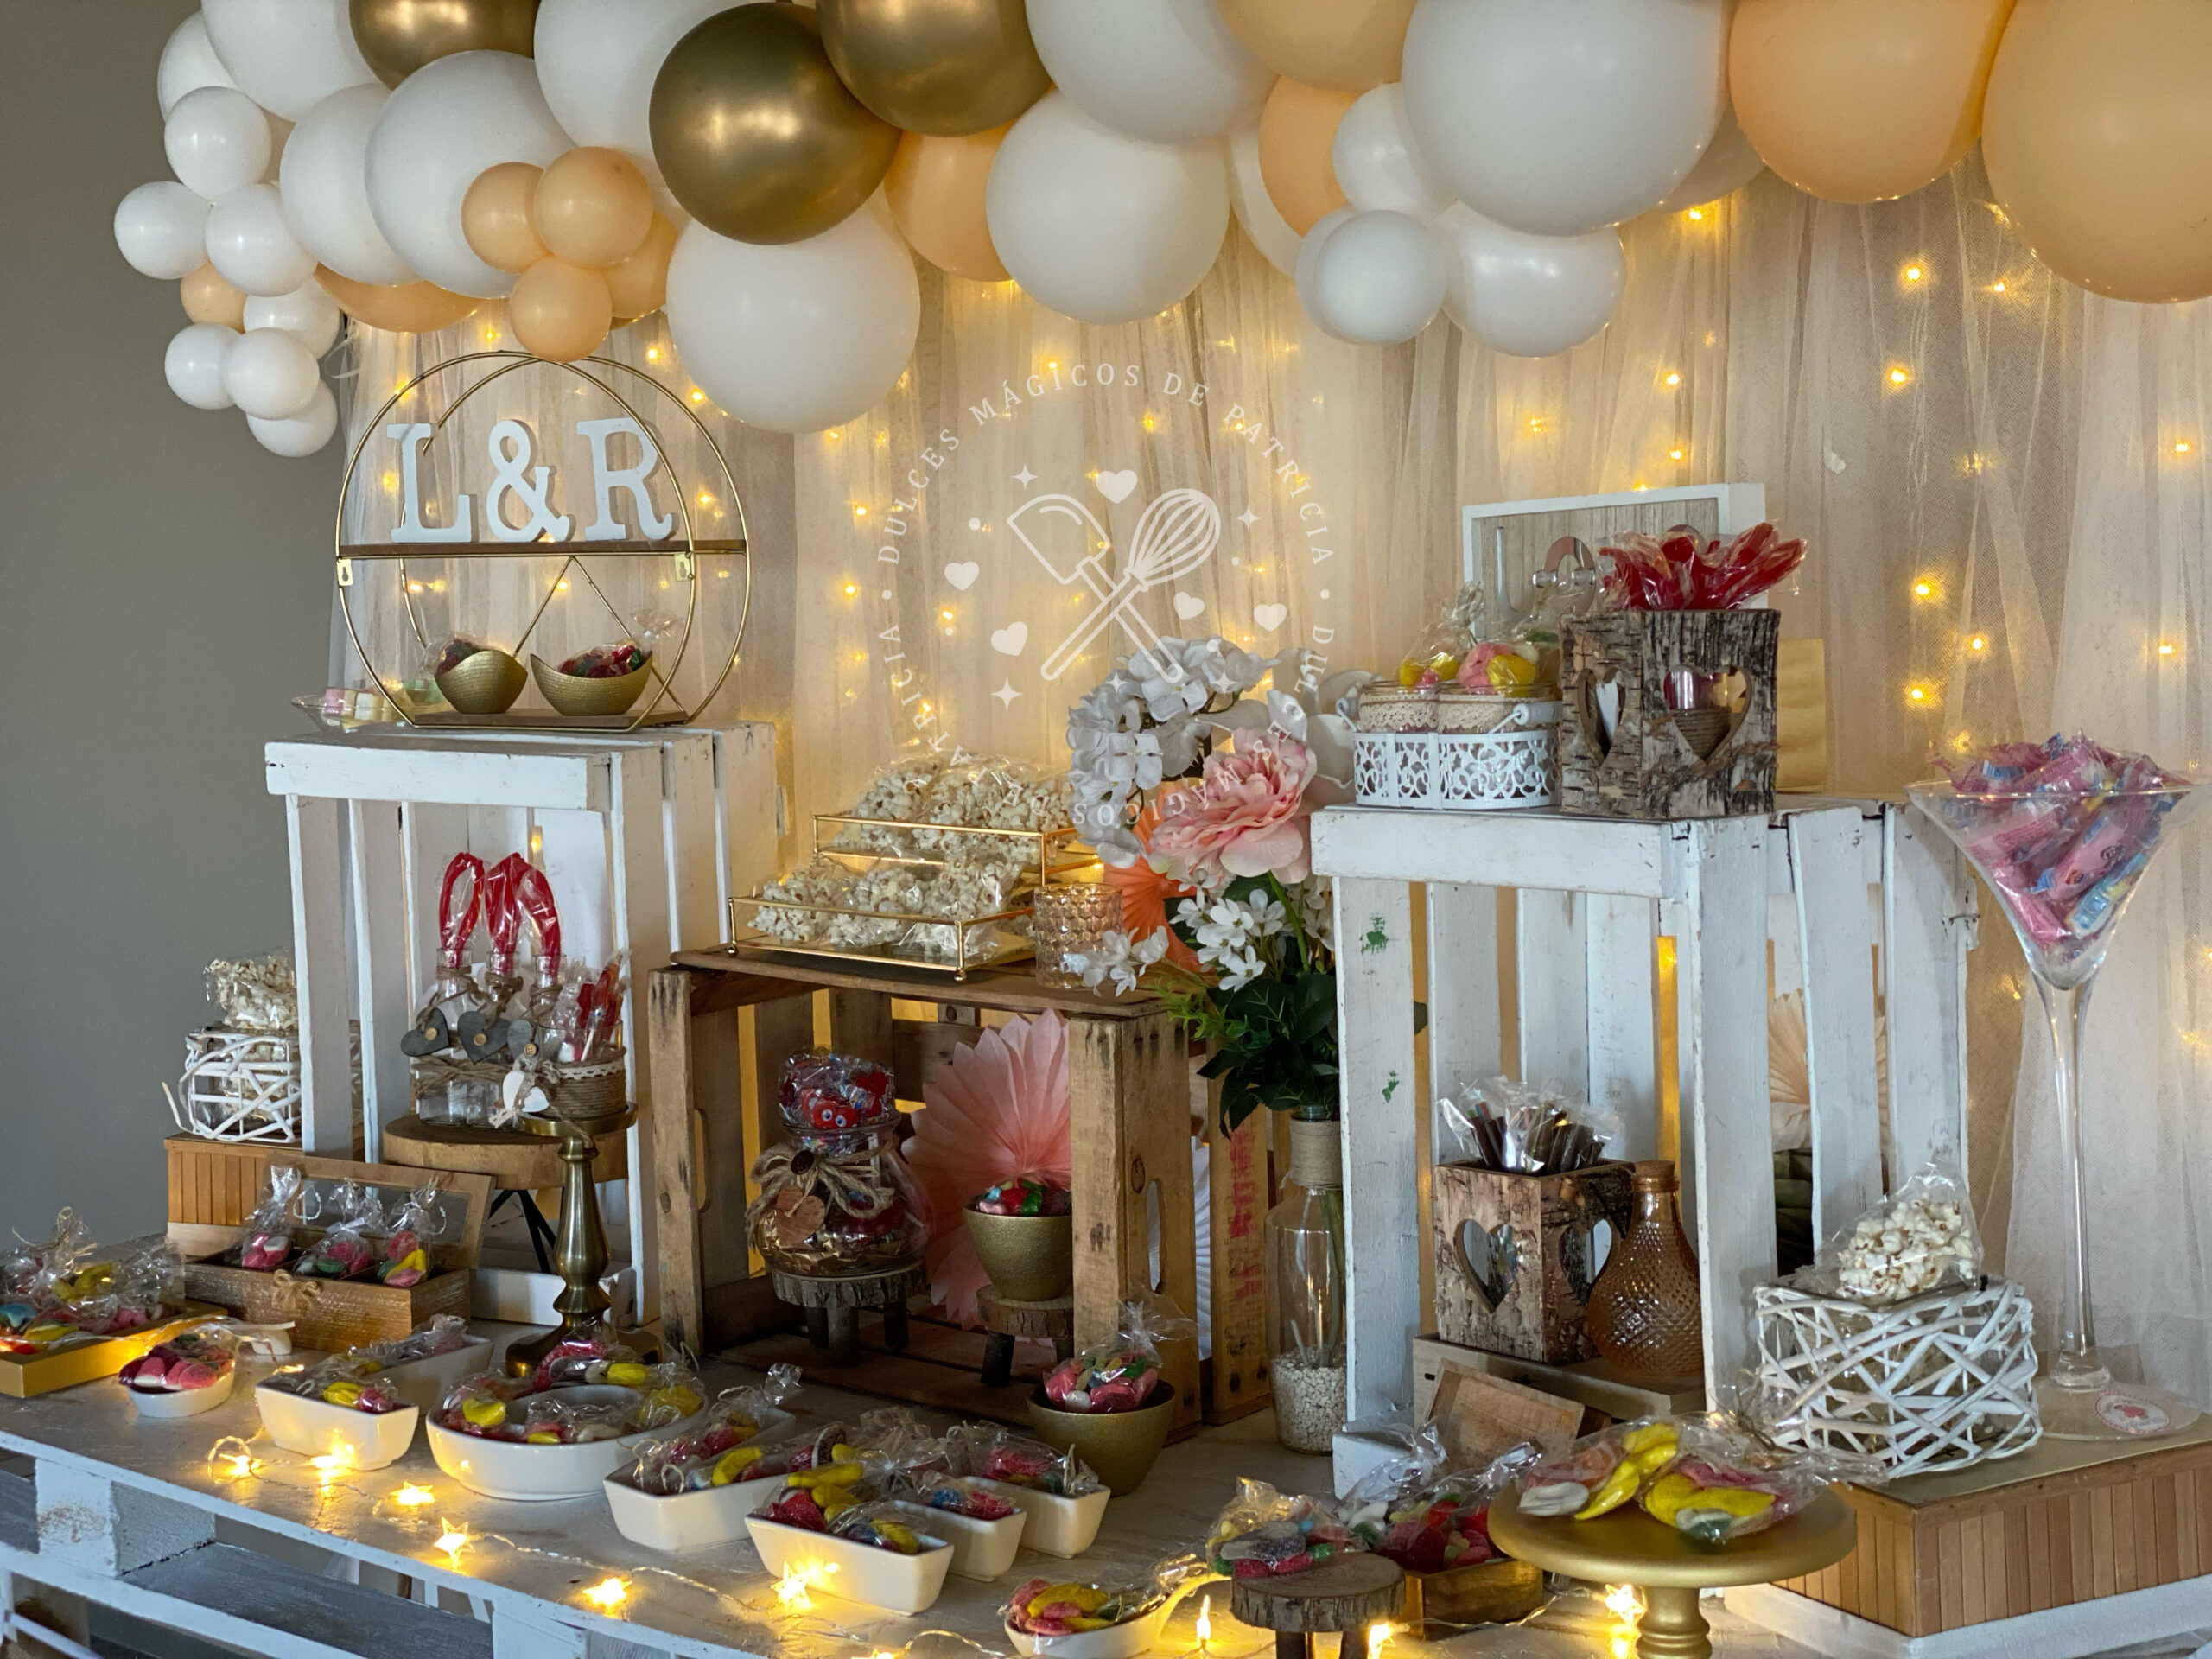 Milanuncios - Candy bar o mesas dulces comunion boda